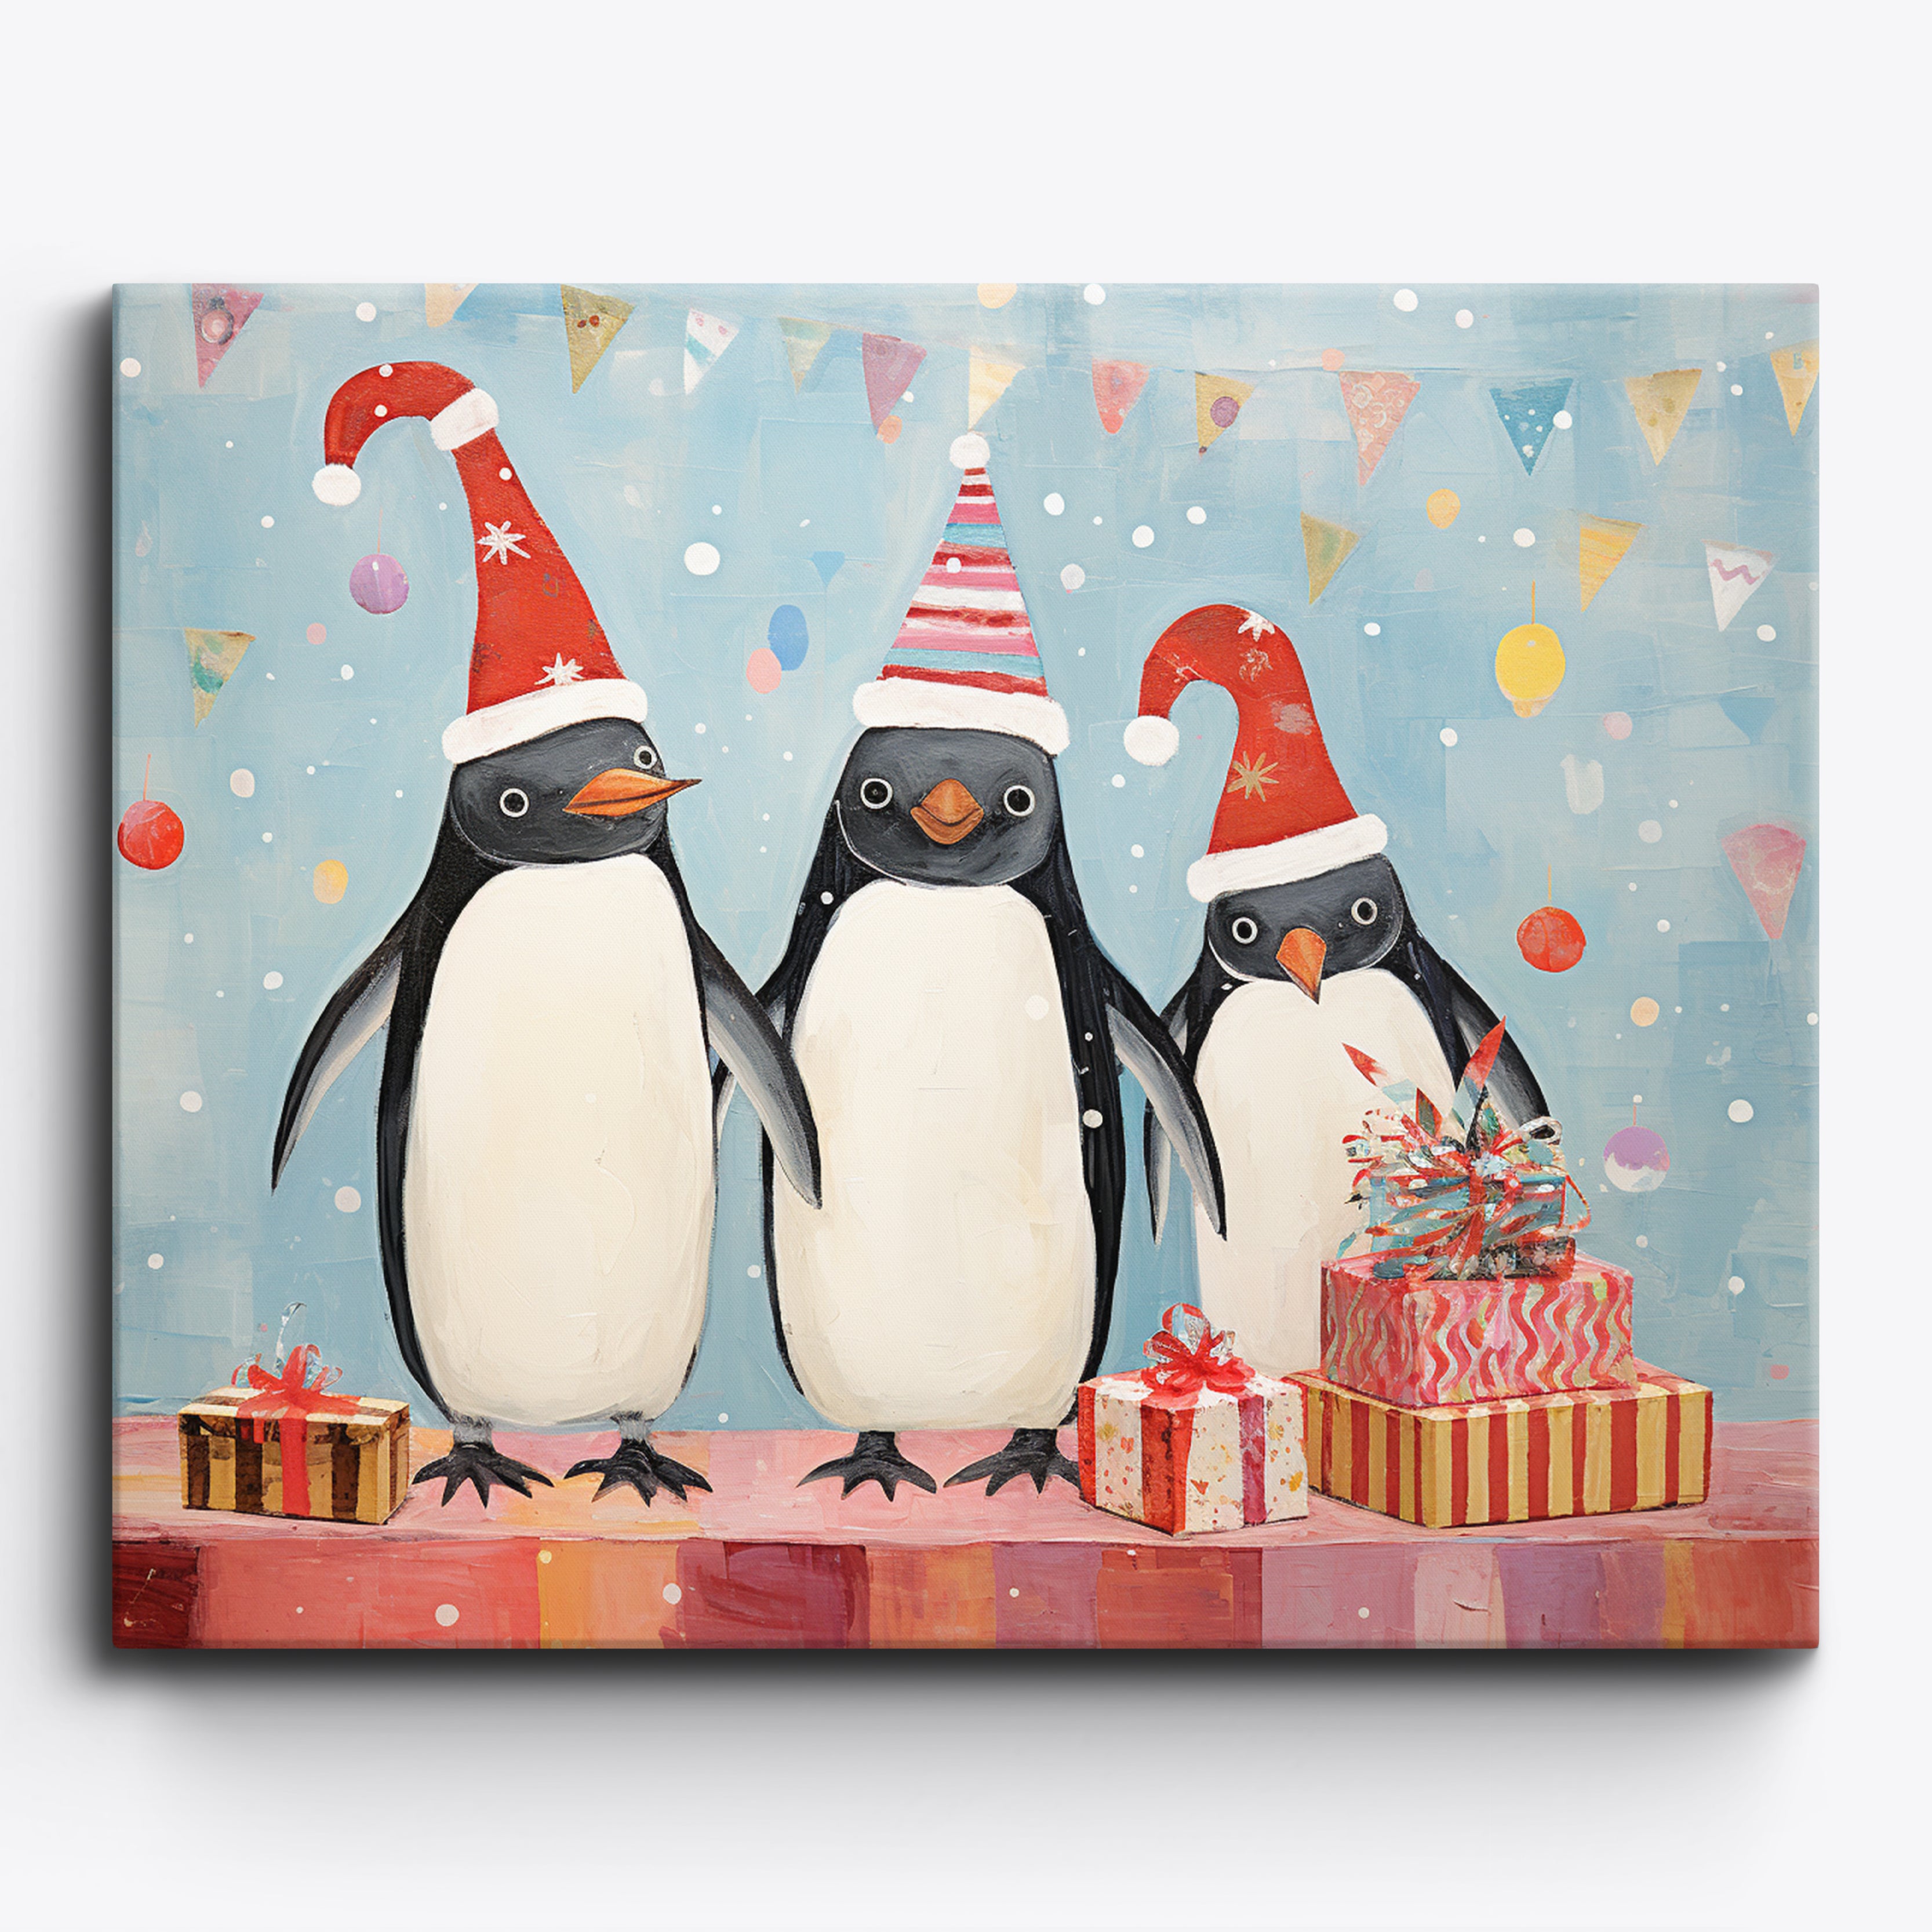 Pinguins muito festivos